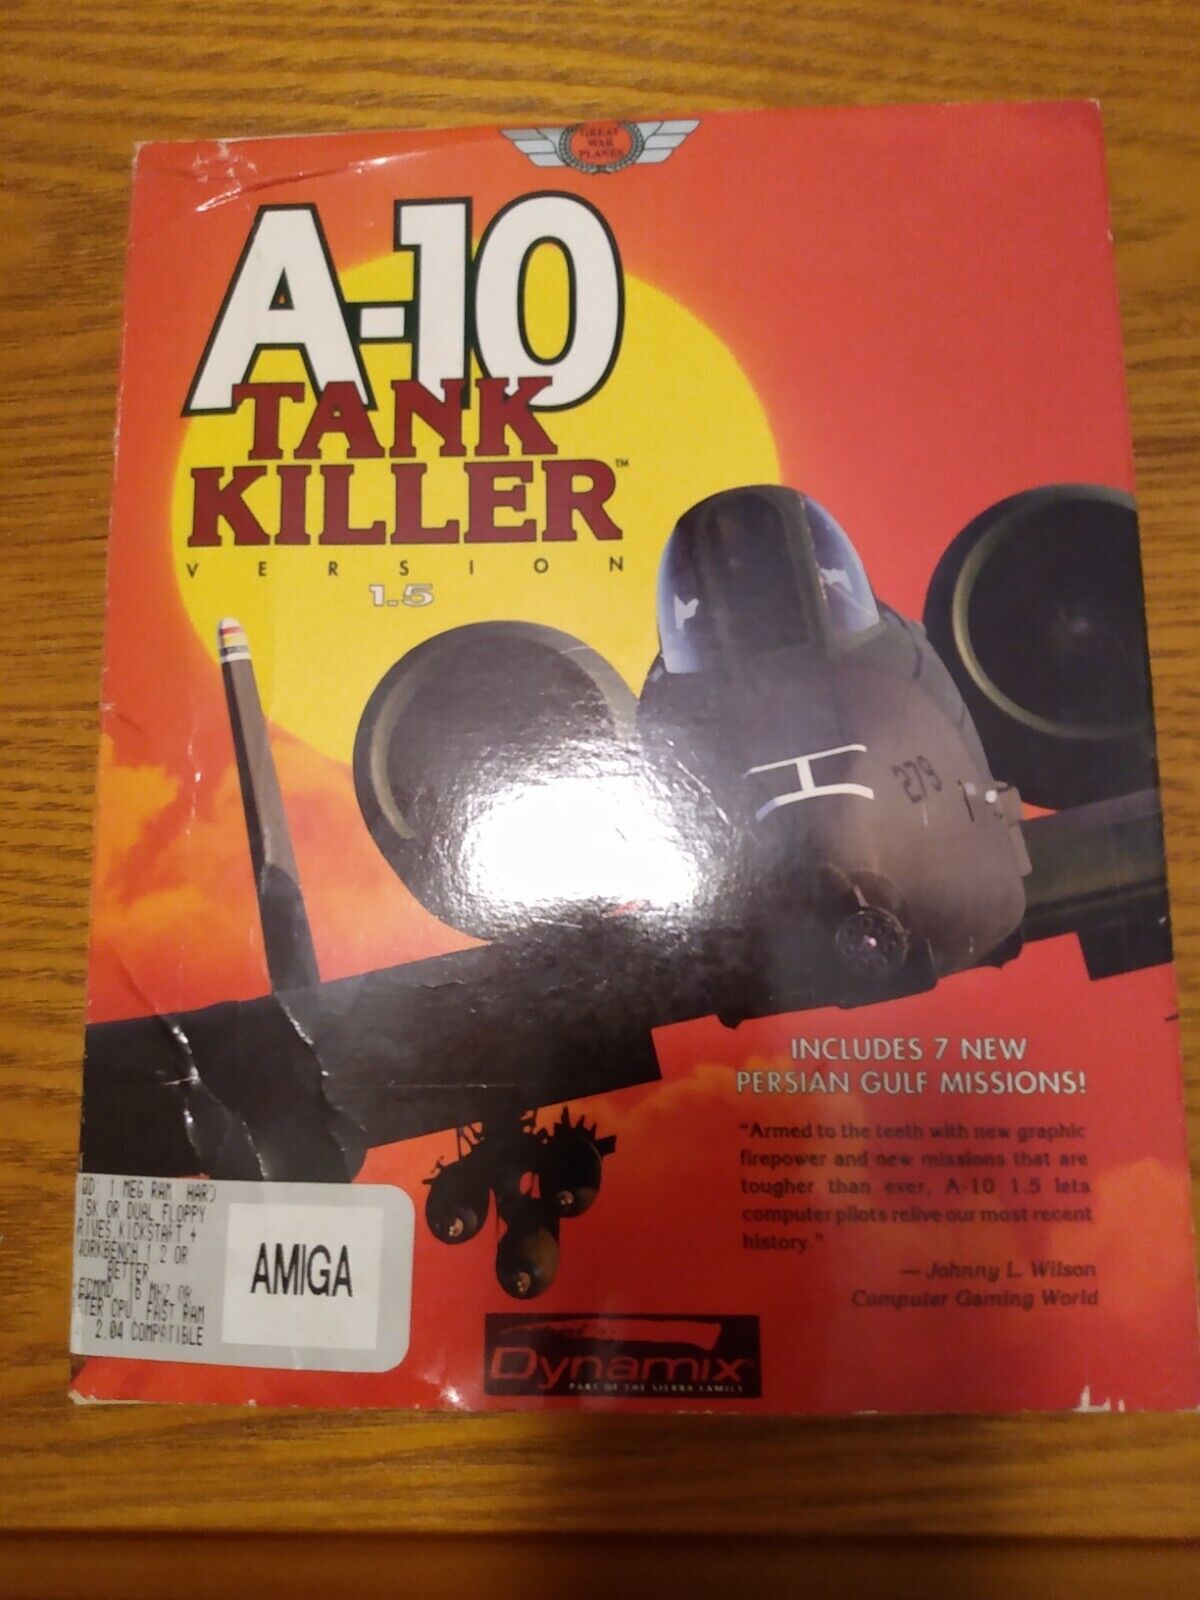 A-10 Tank Killer Video Game for the Commodore Amiga in Original Box